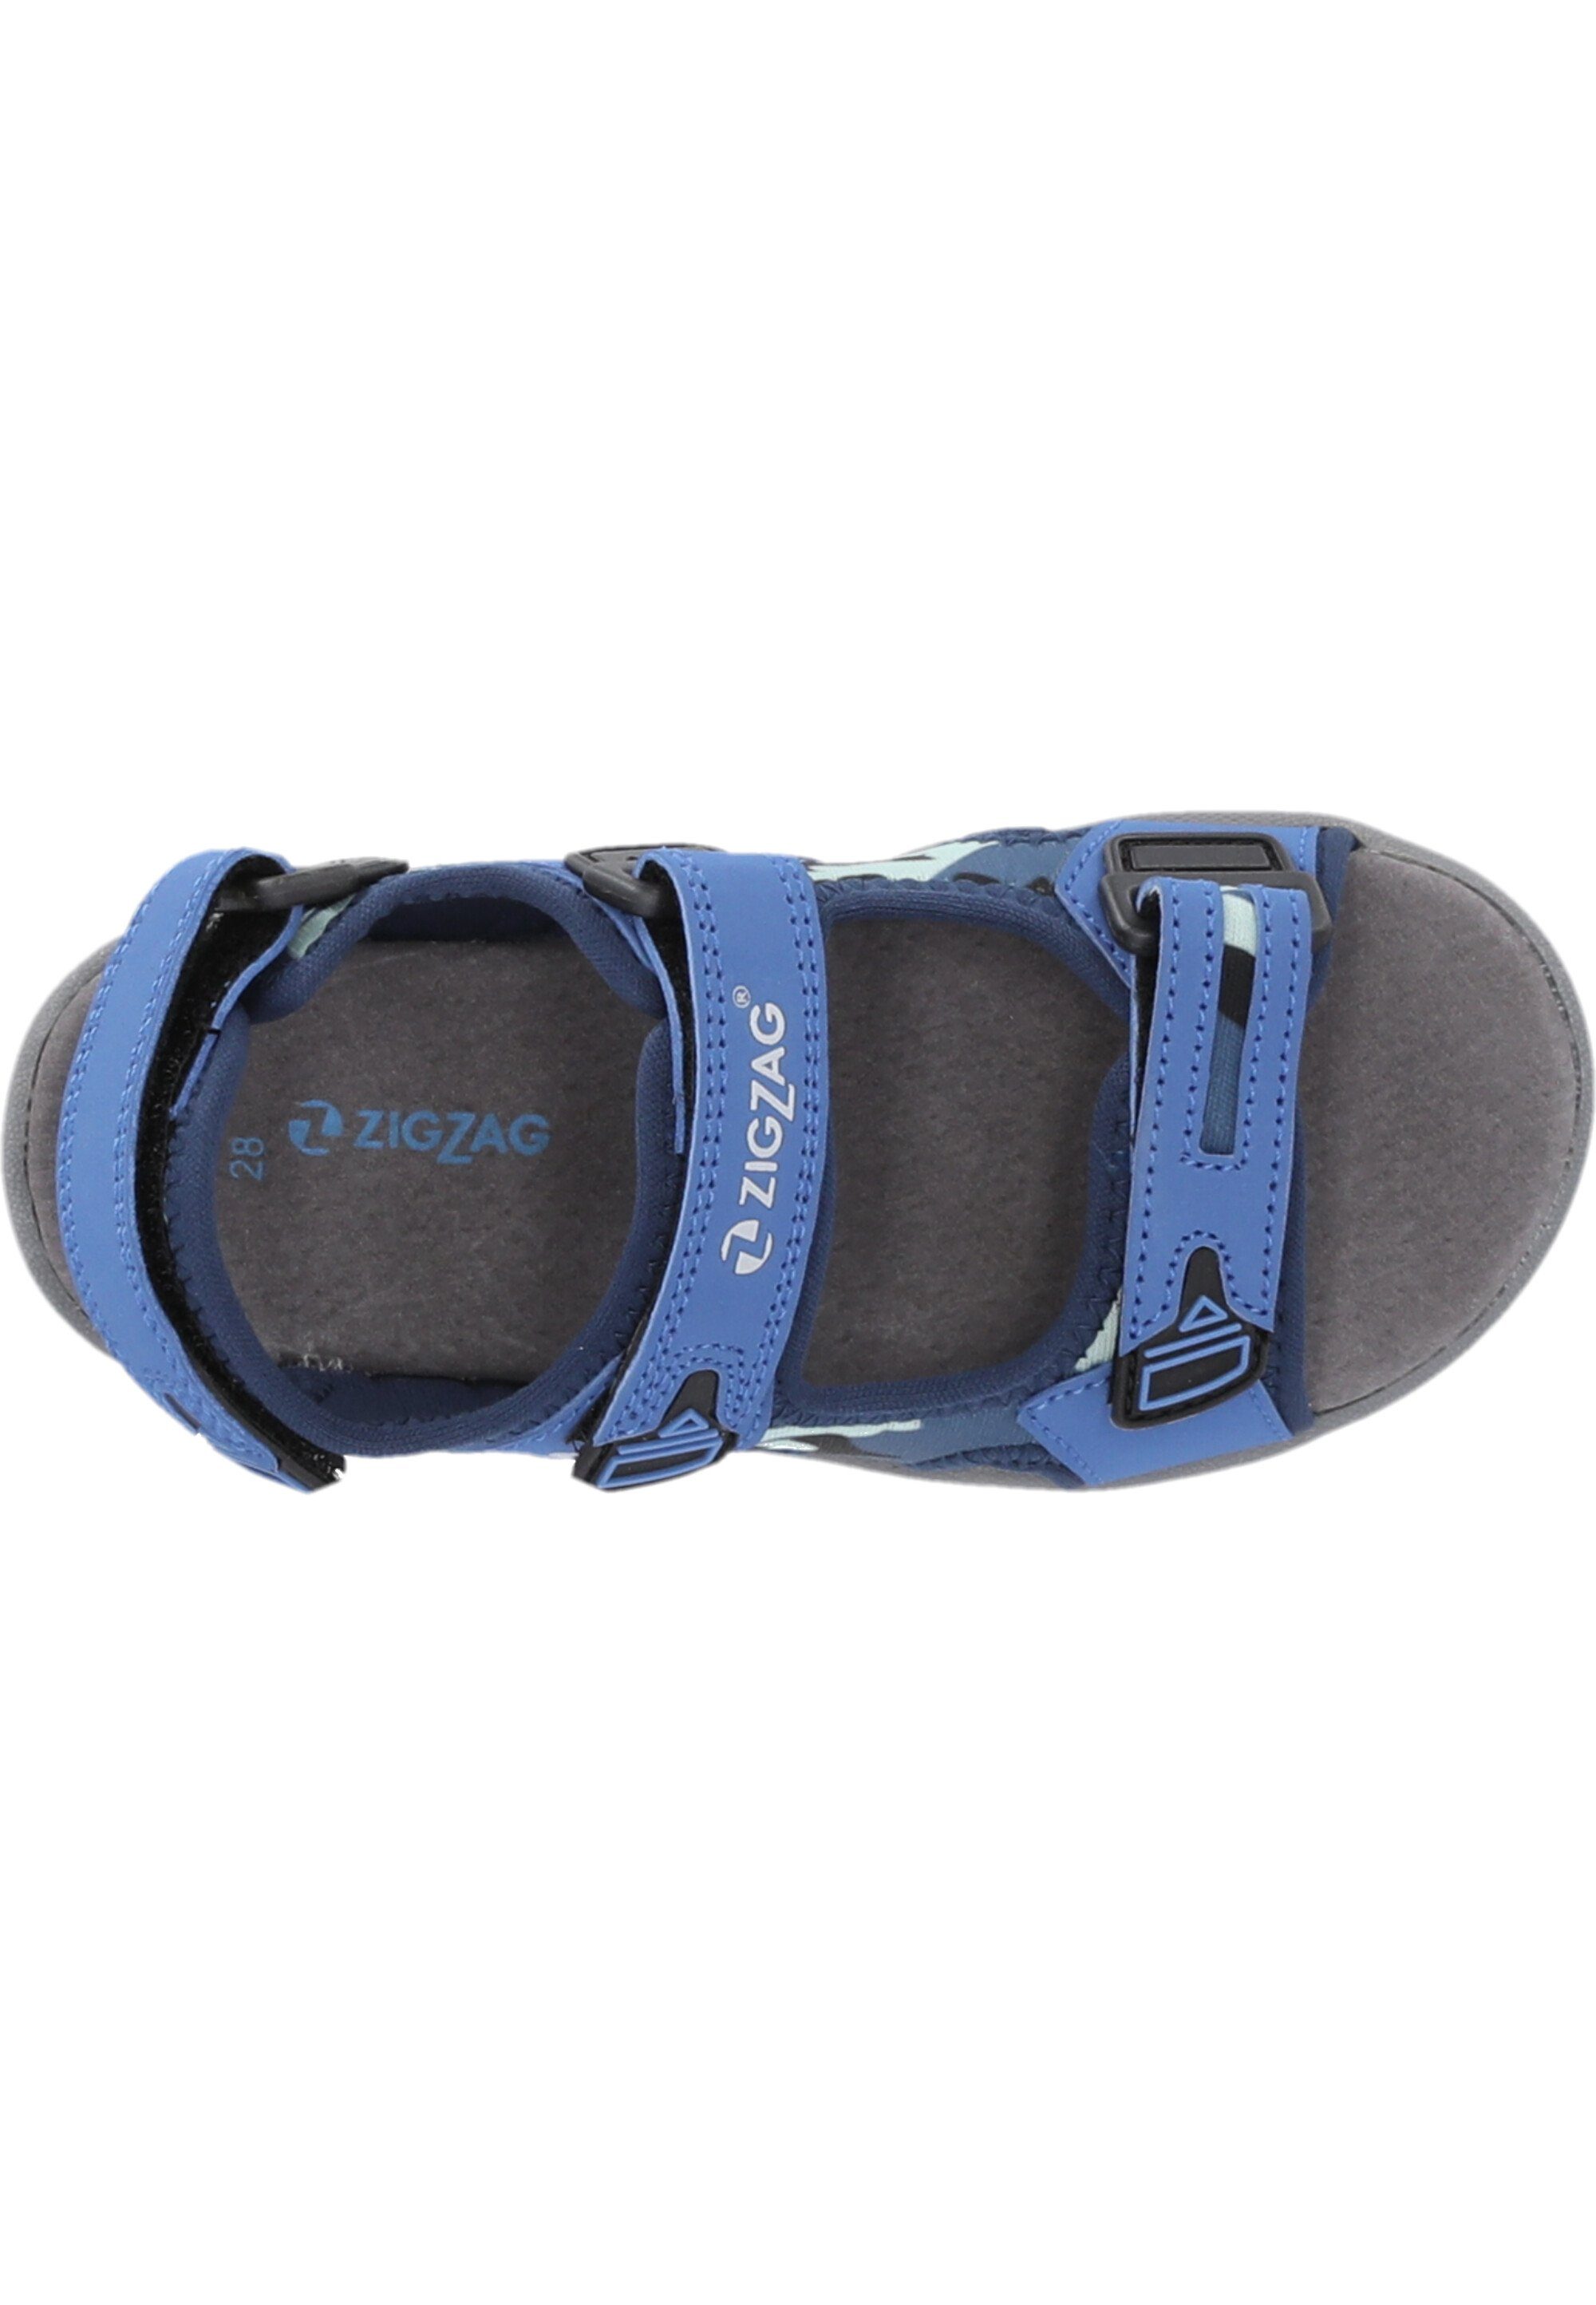 ZIGZAG Tanaka Sandale blau-blau Klettverschluss mit praktischem